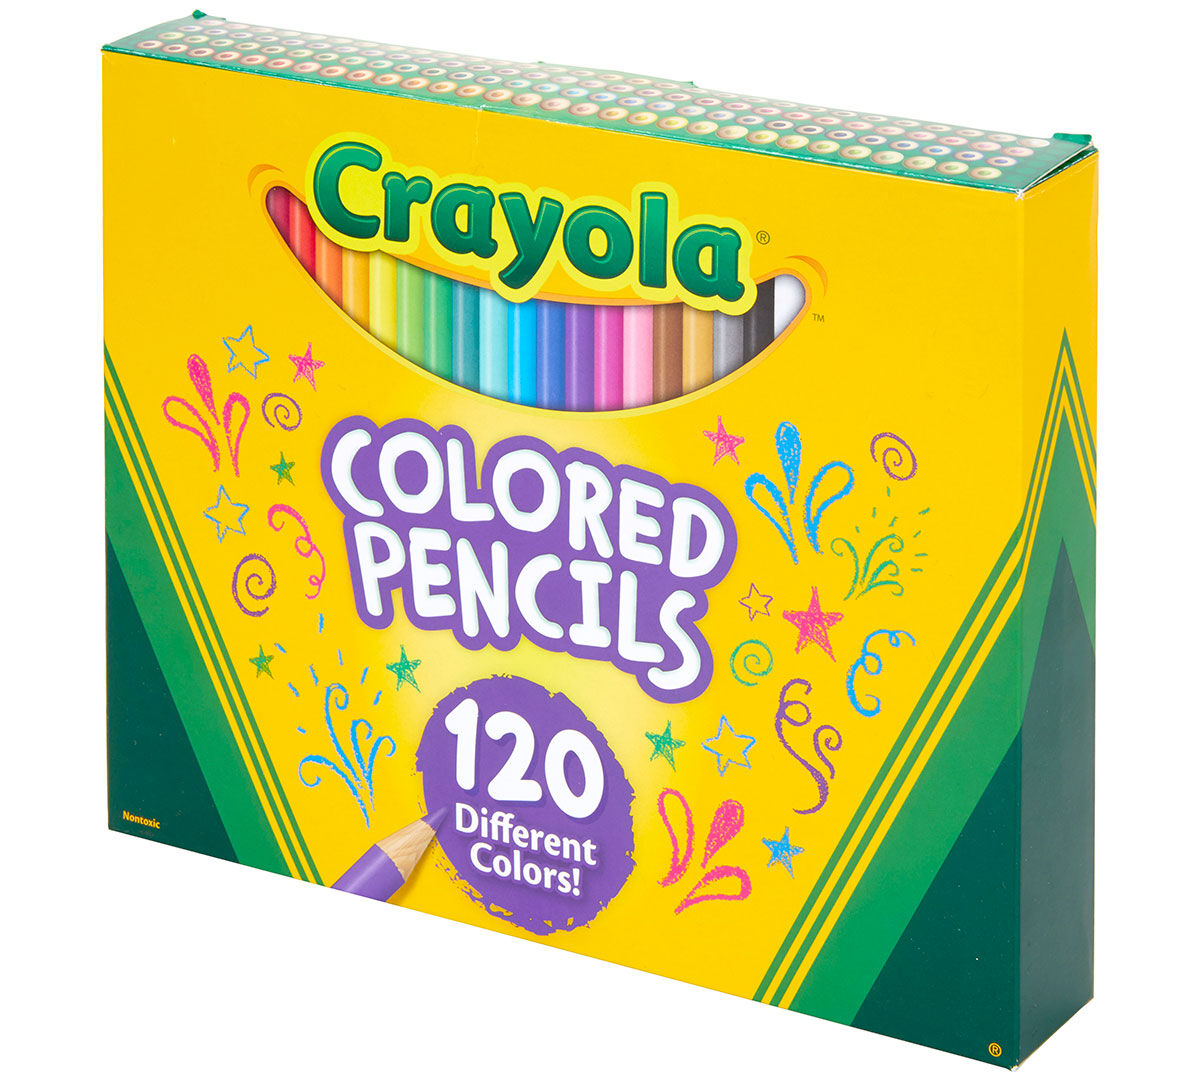 Colored Pencils, 120 Count, Coloring Supplies | Crayola.com | Crayola